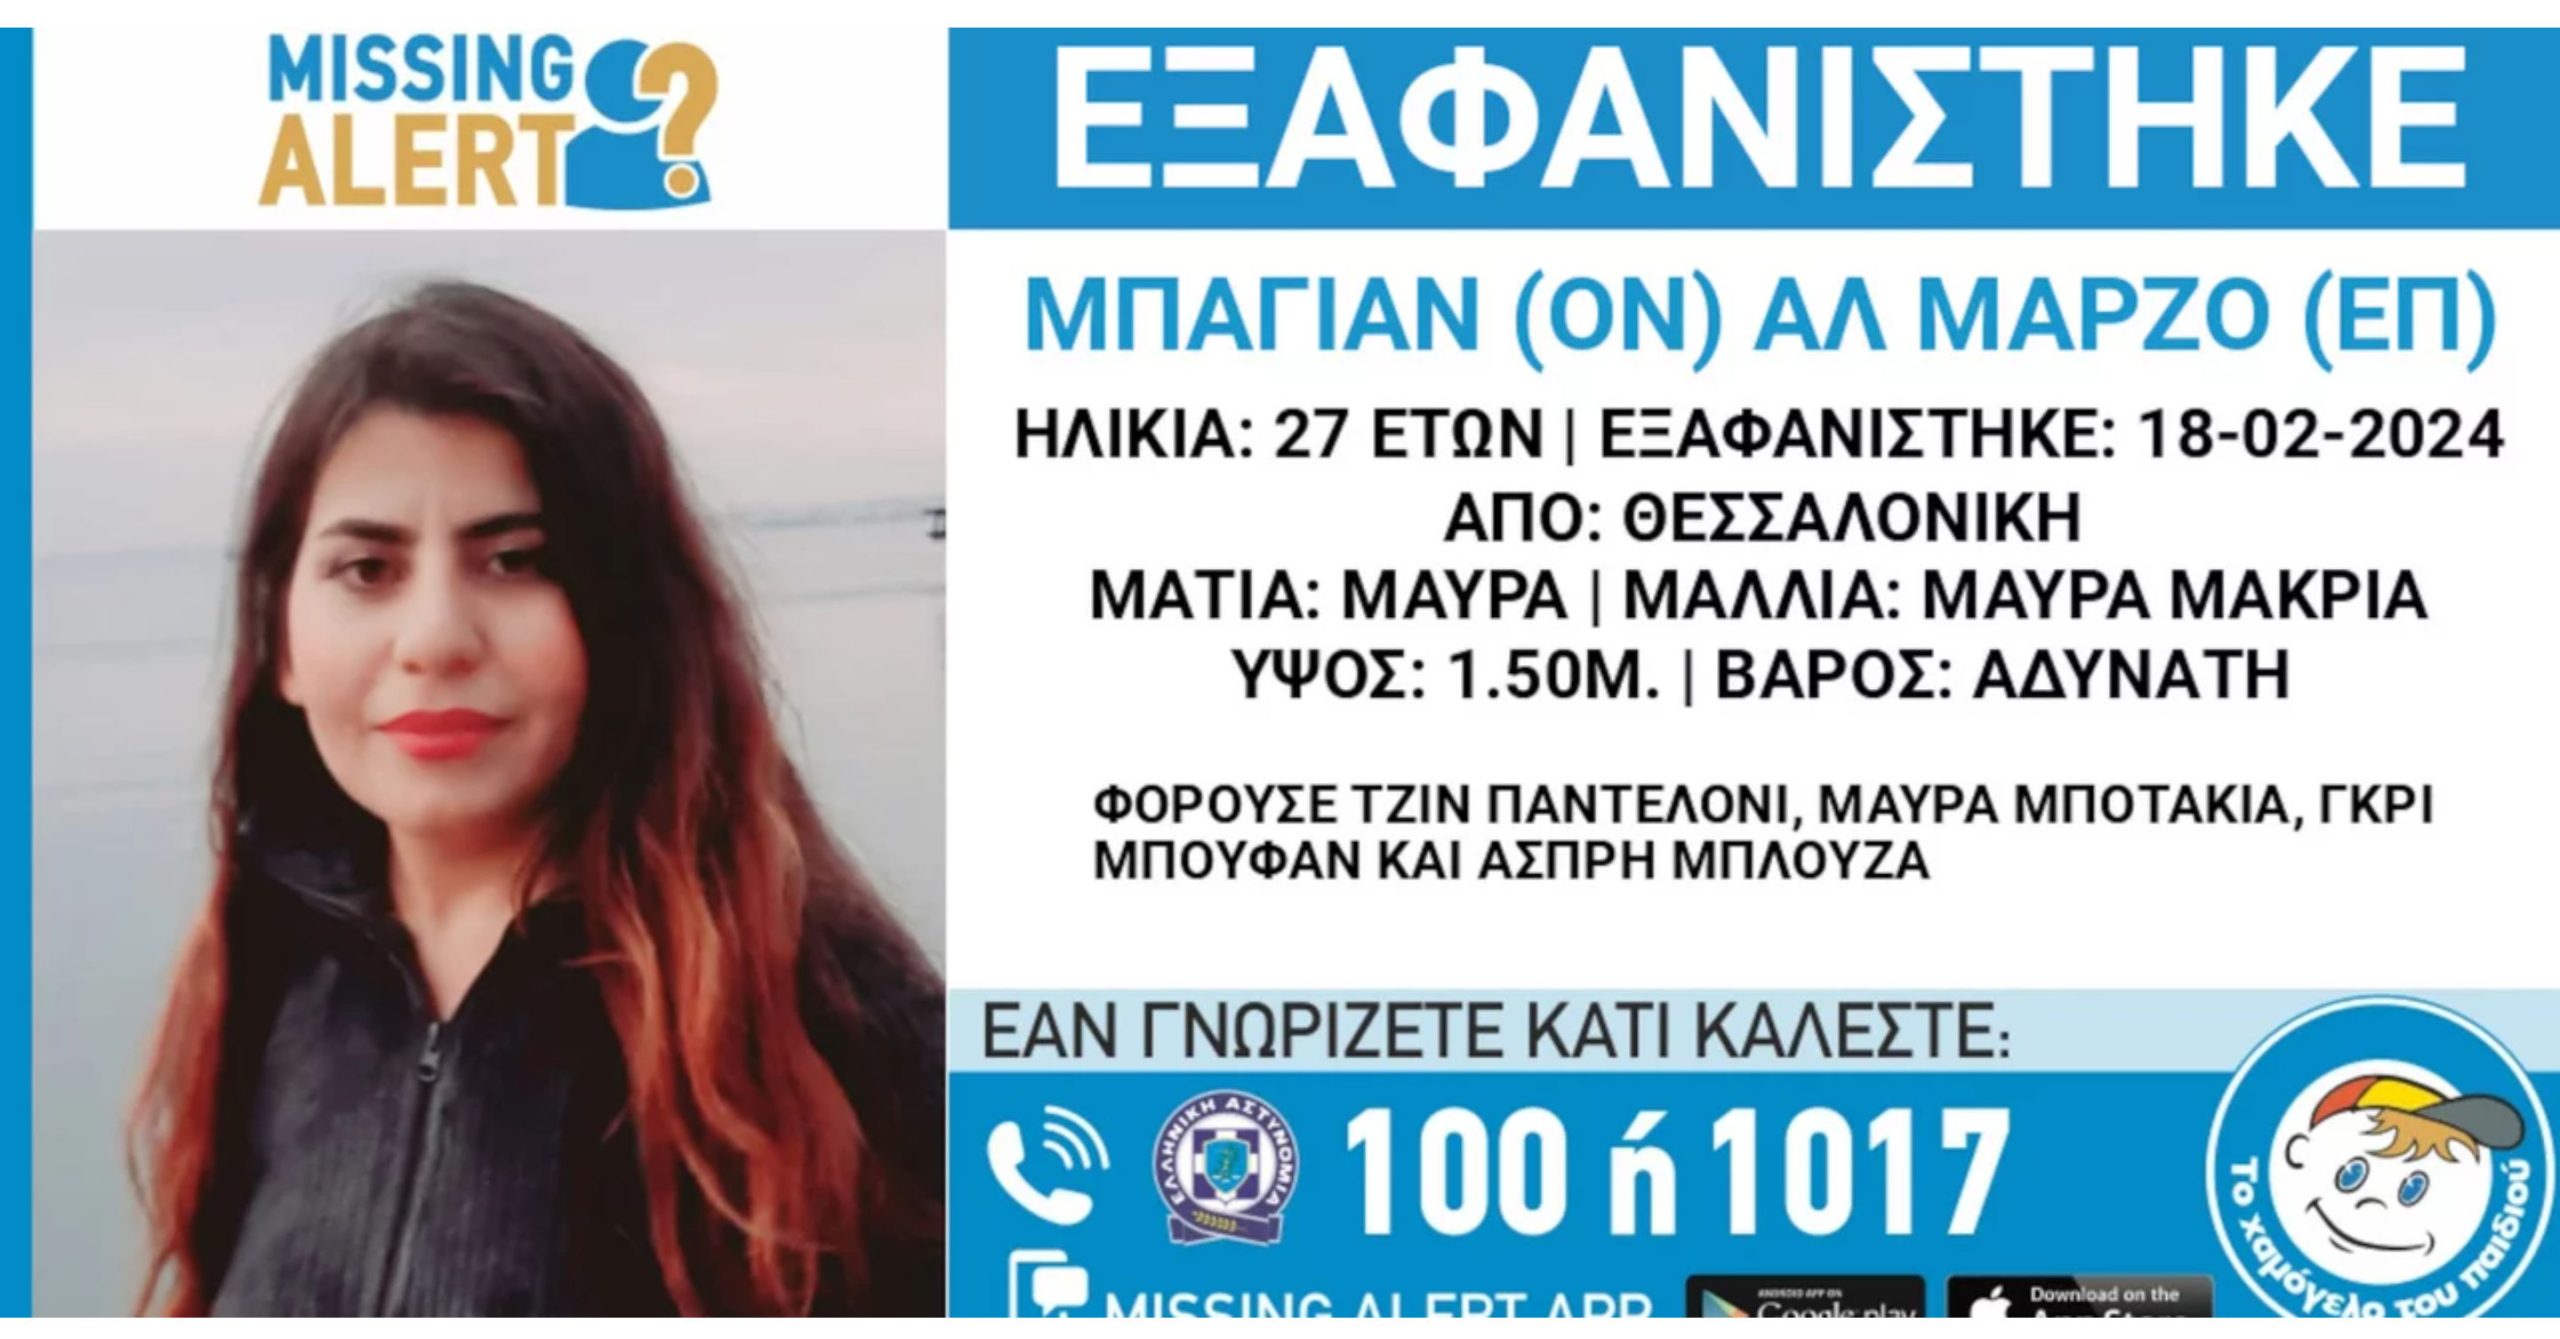 Missing Alert: Συναγερμός για την εξαφάνιση 27χρονης από τη Θεσσαλονίκη